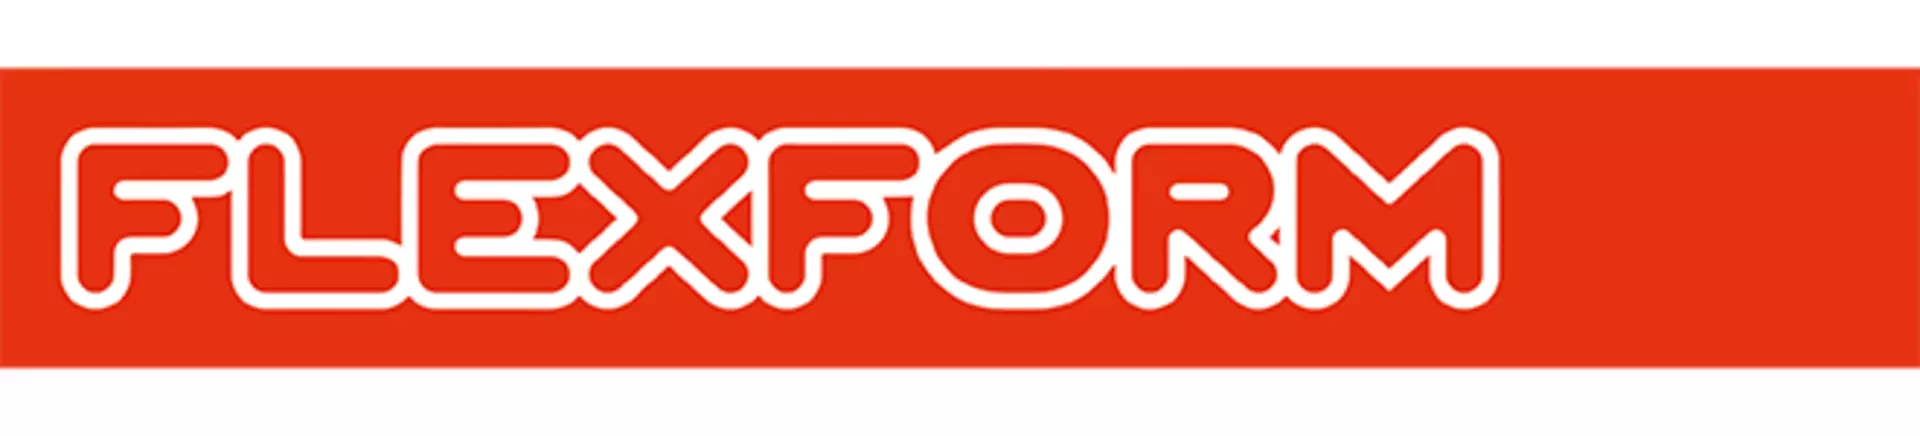 Logo der Design Marke Flexform